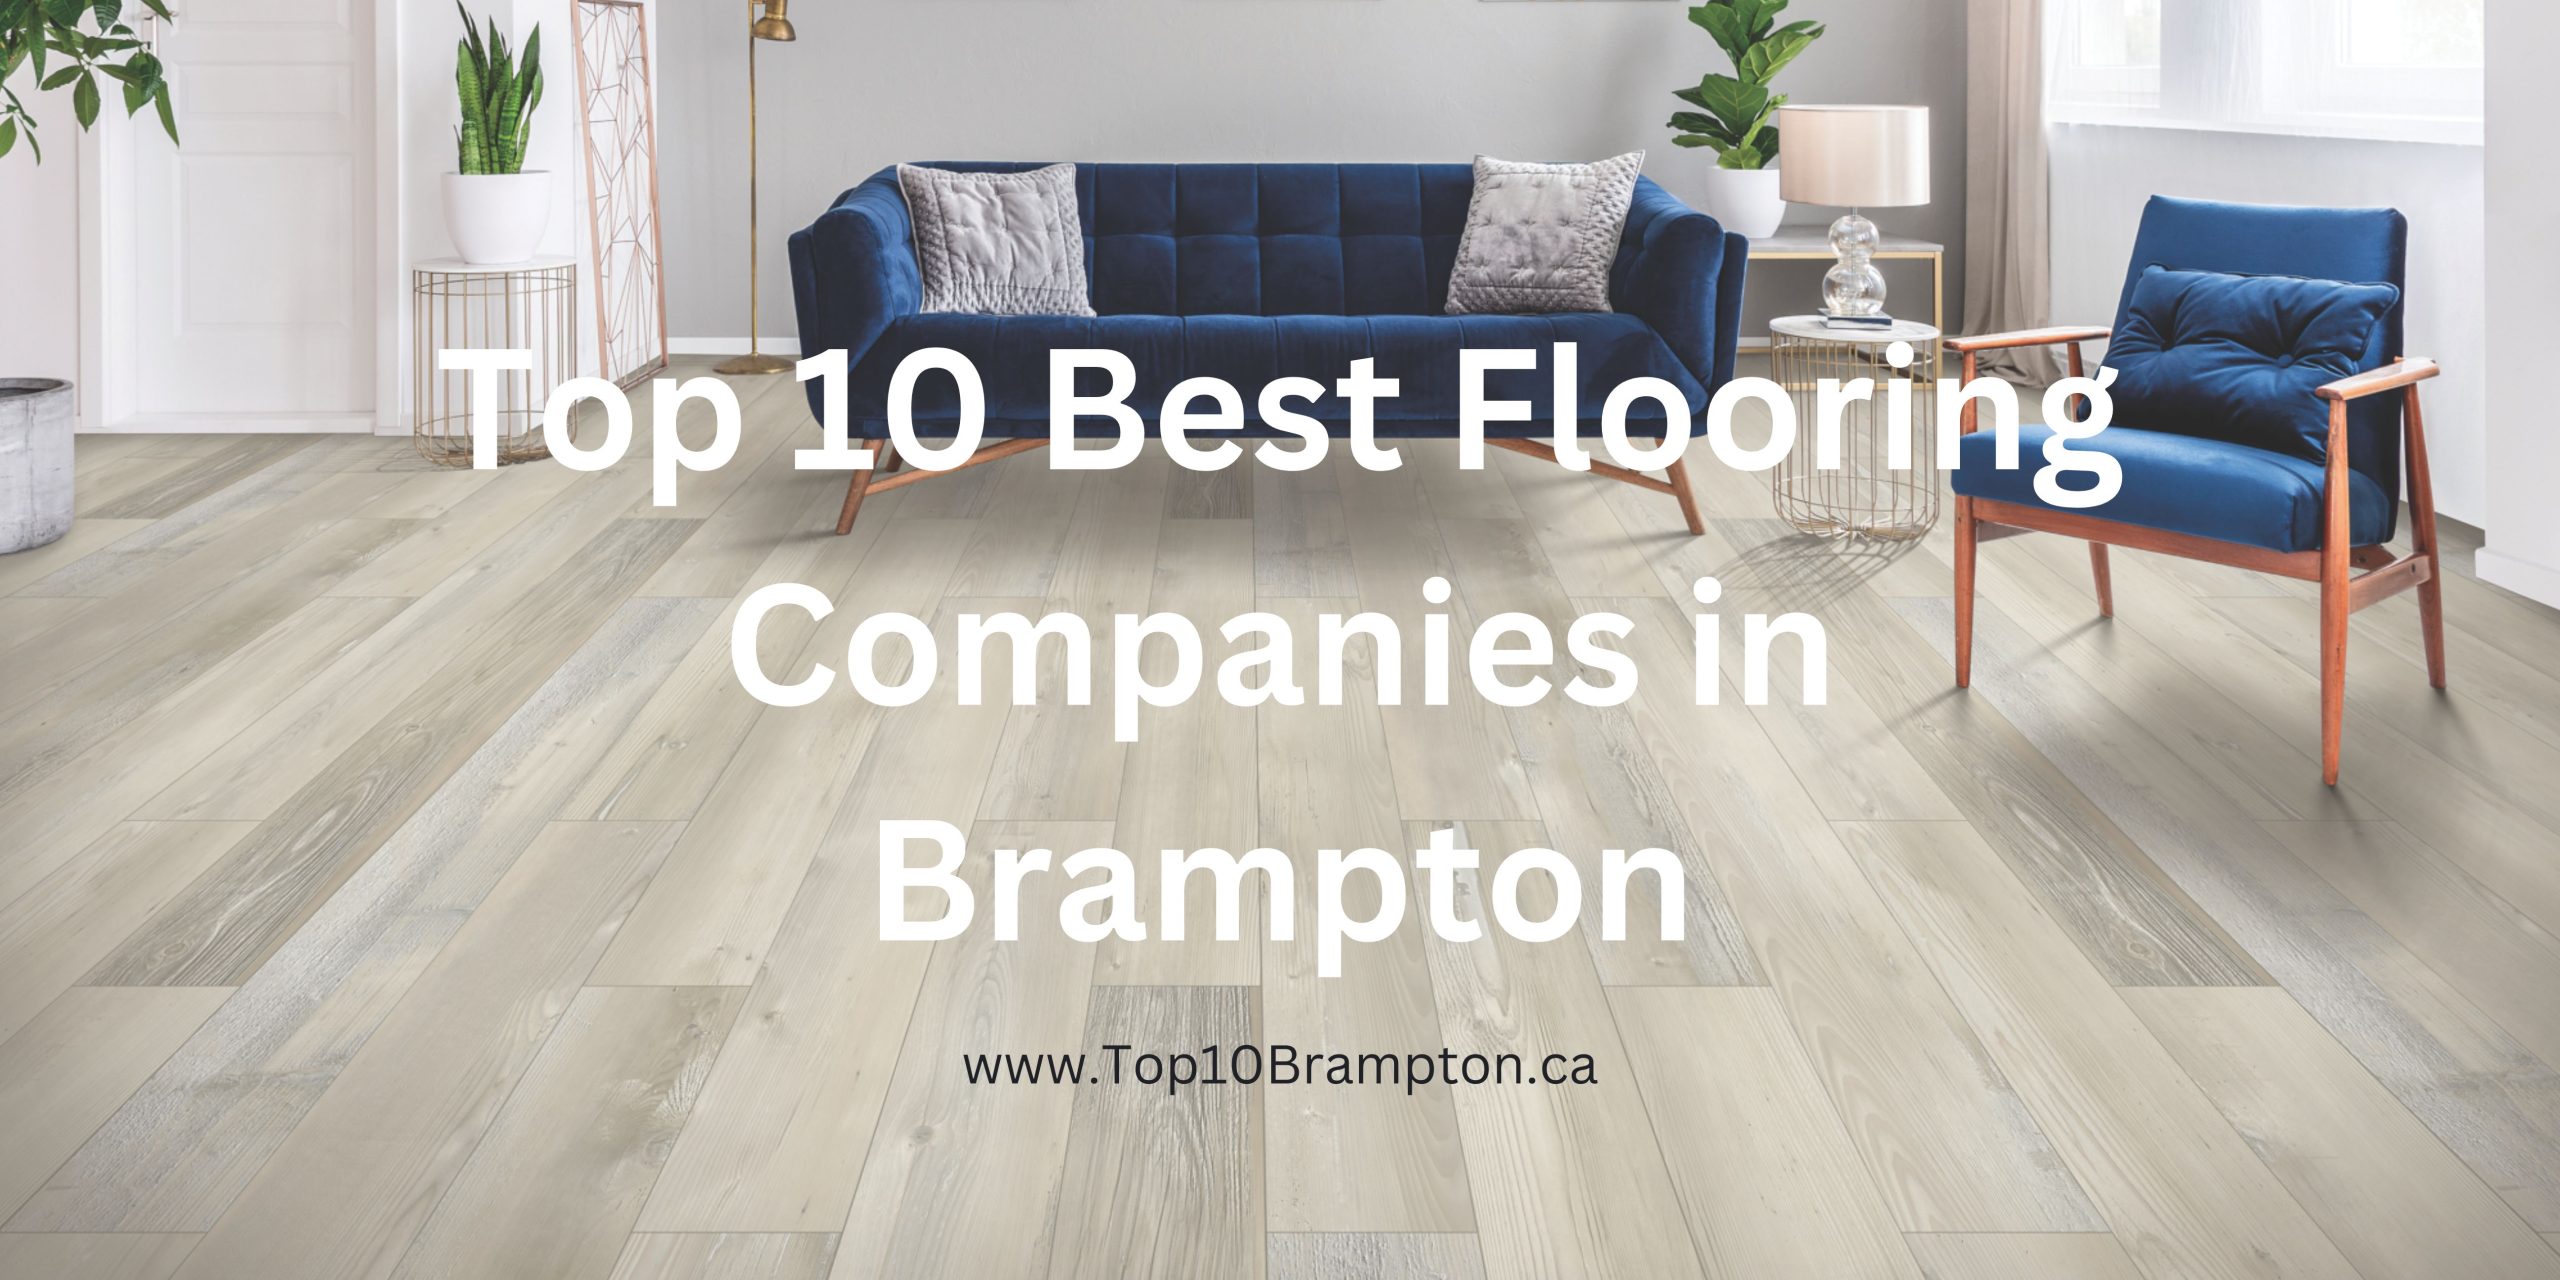 Best Flooring Companies in Brampton